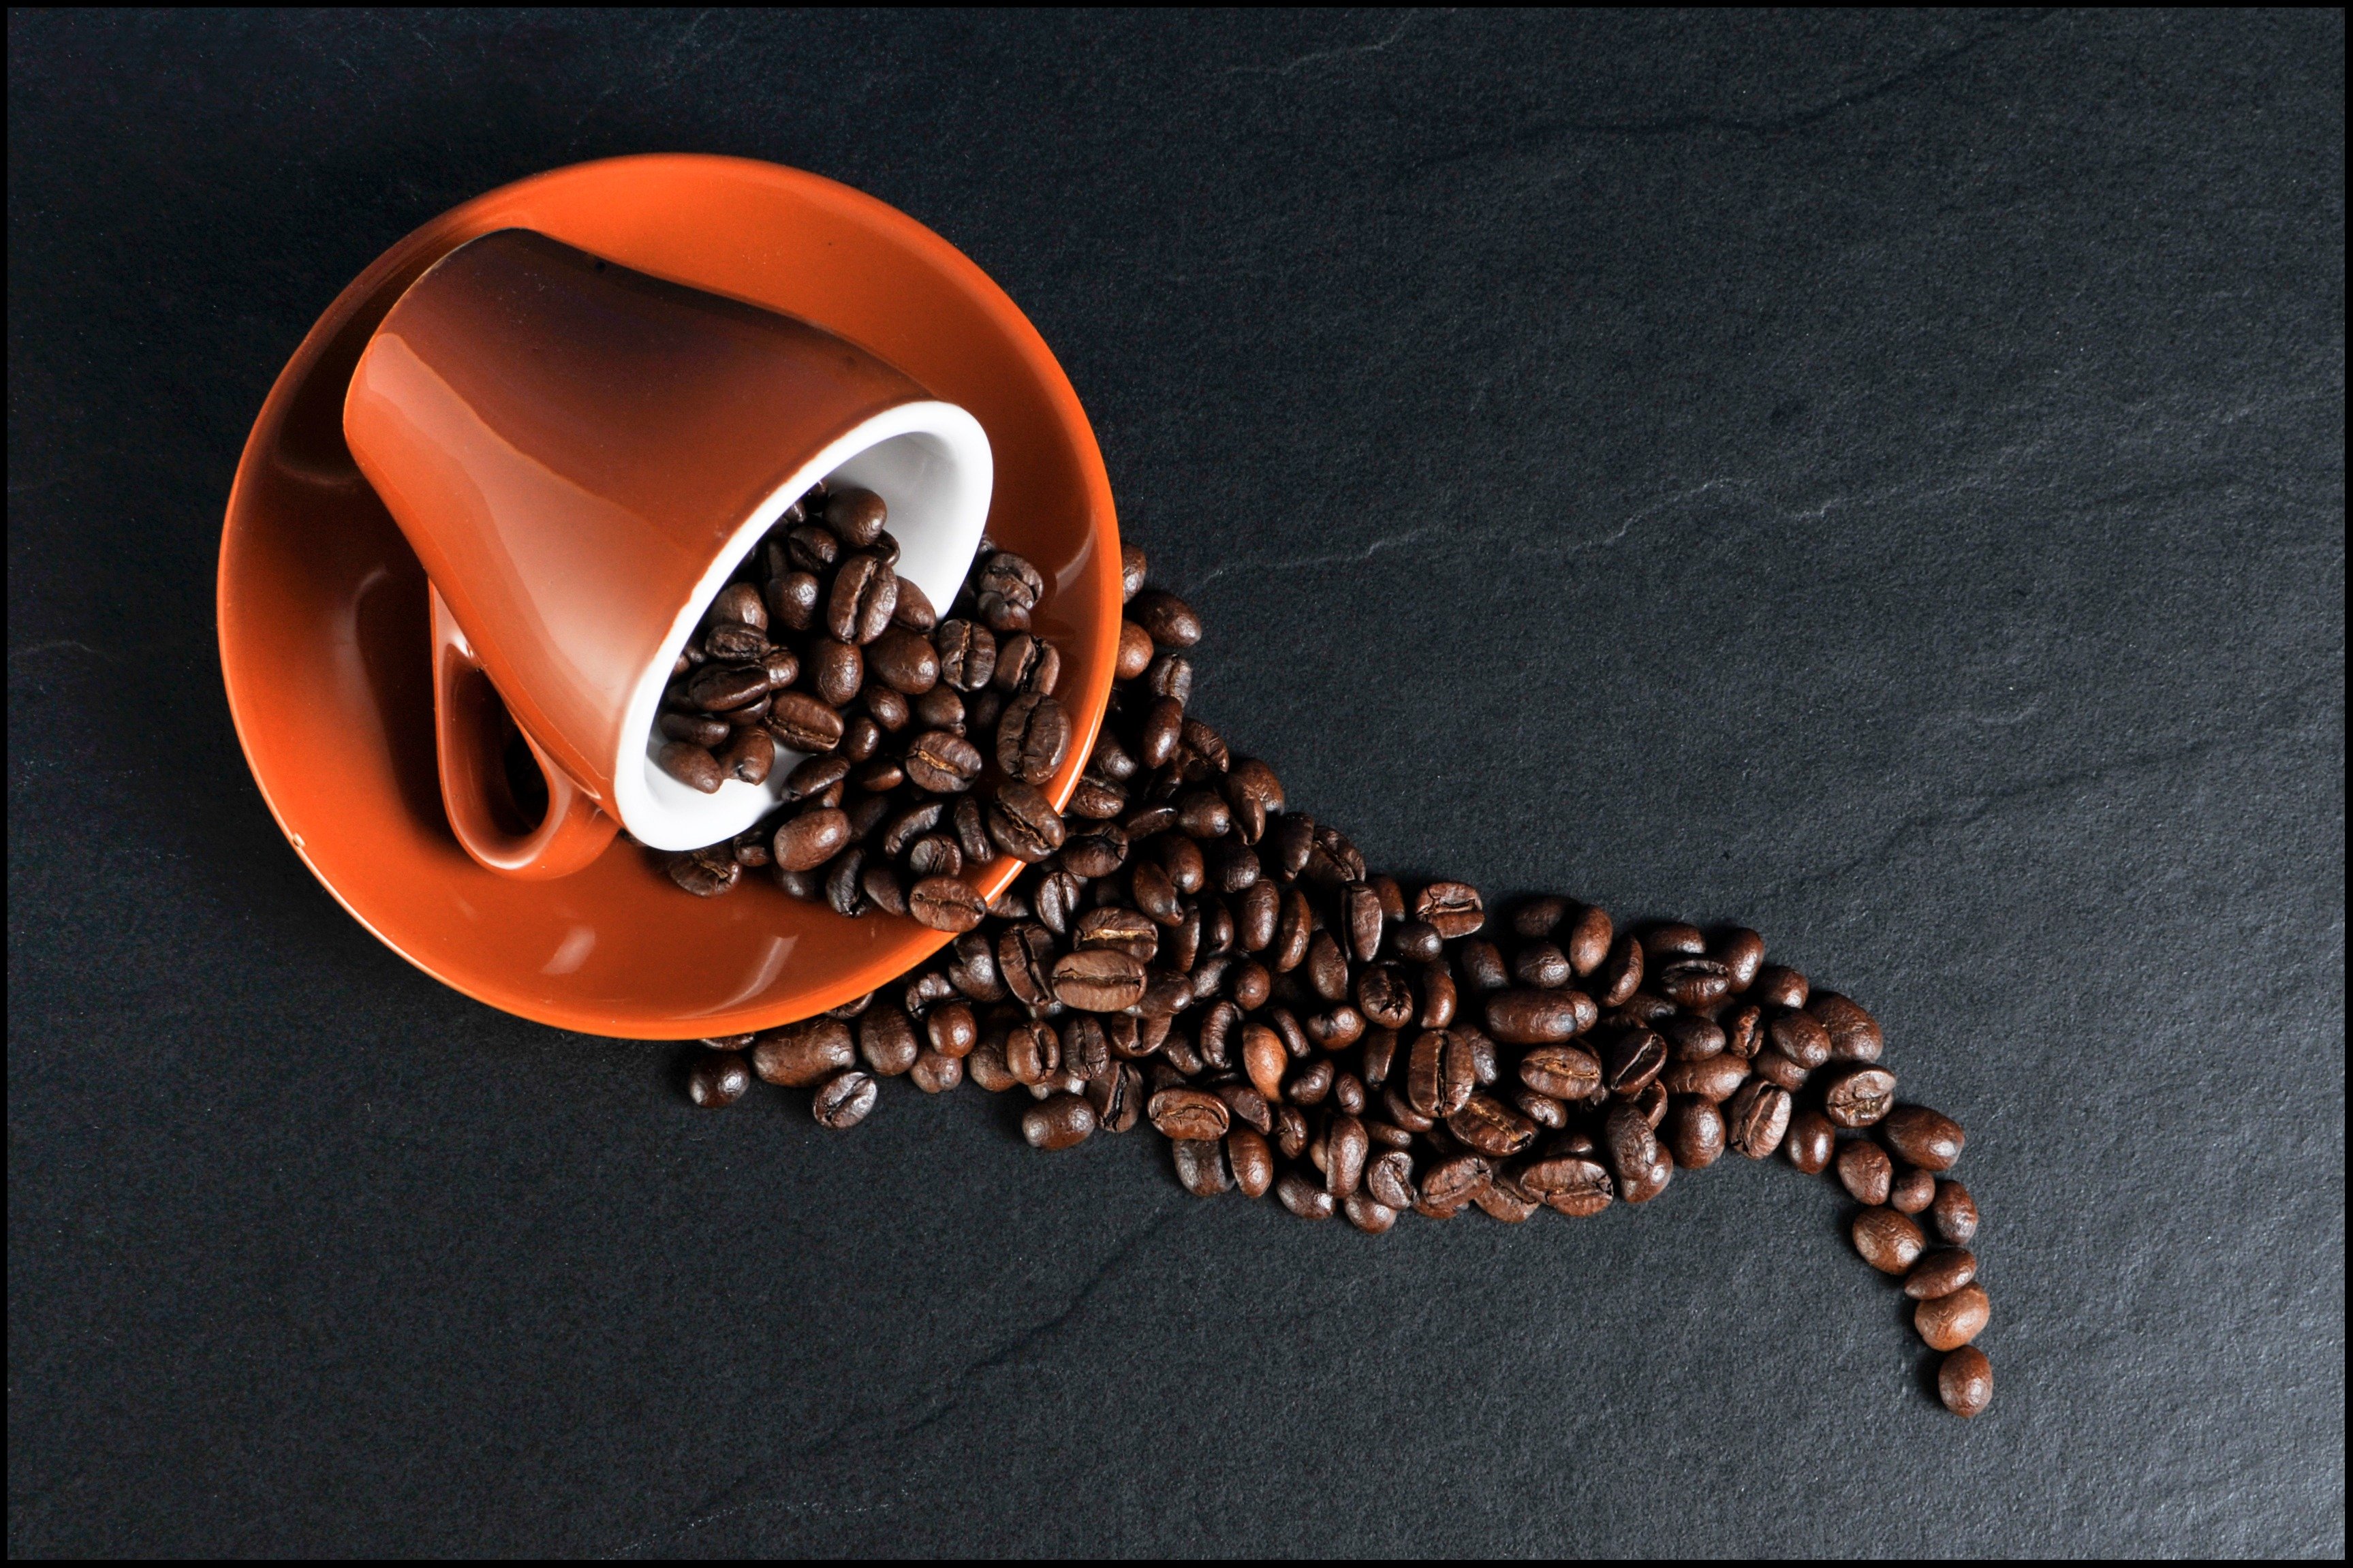 Tassa amb grans de café : Pixabay